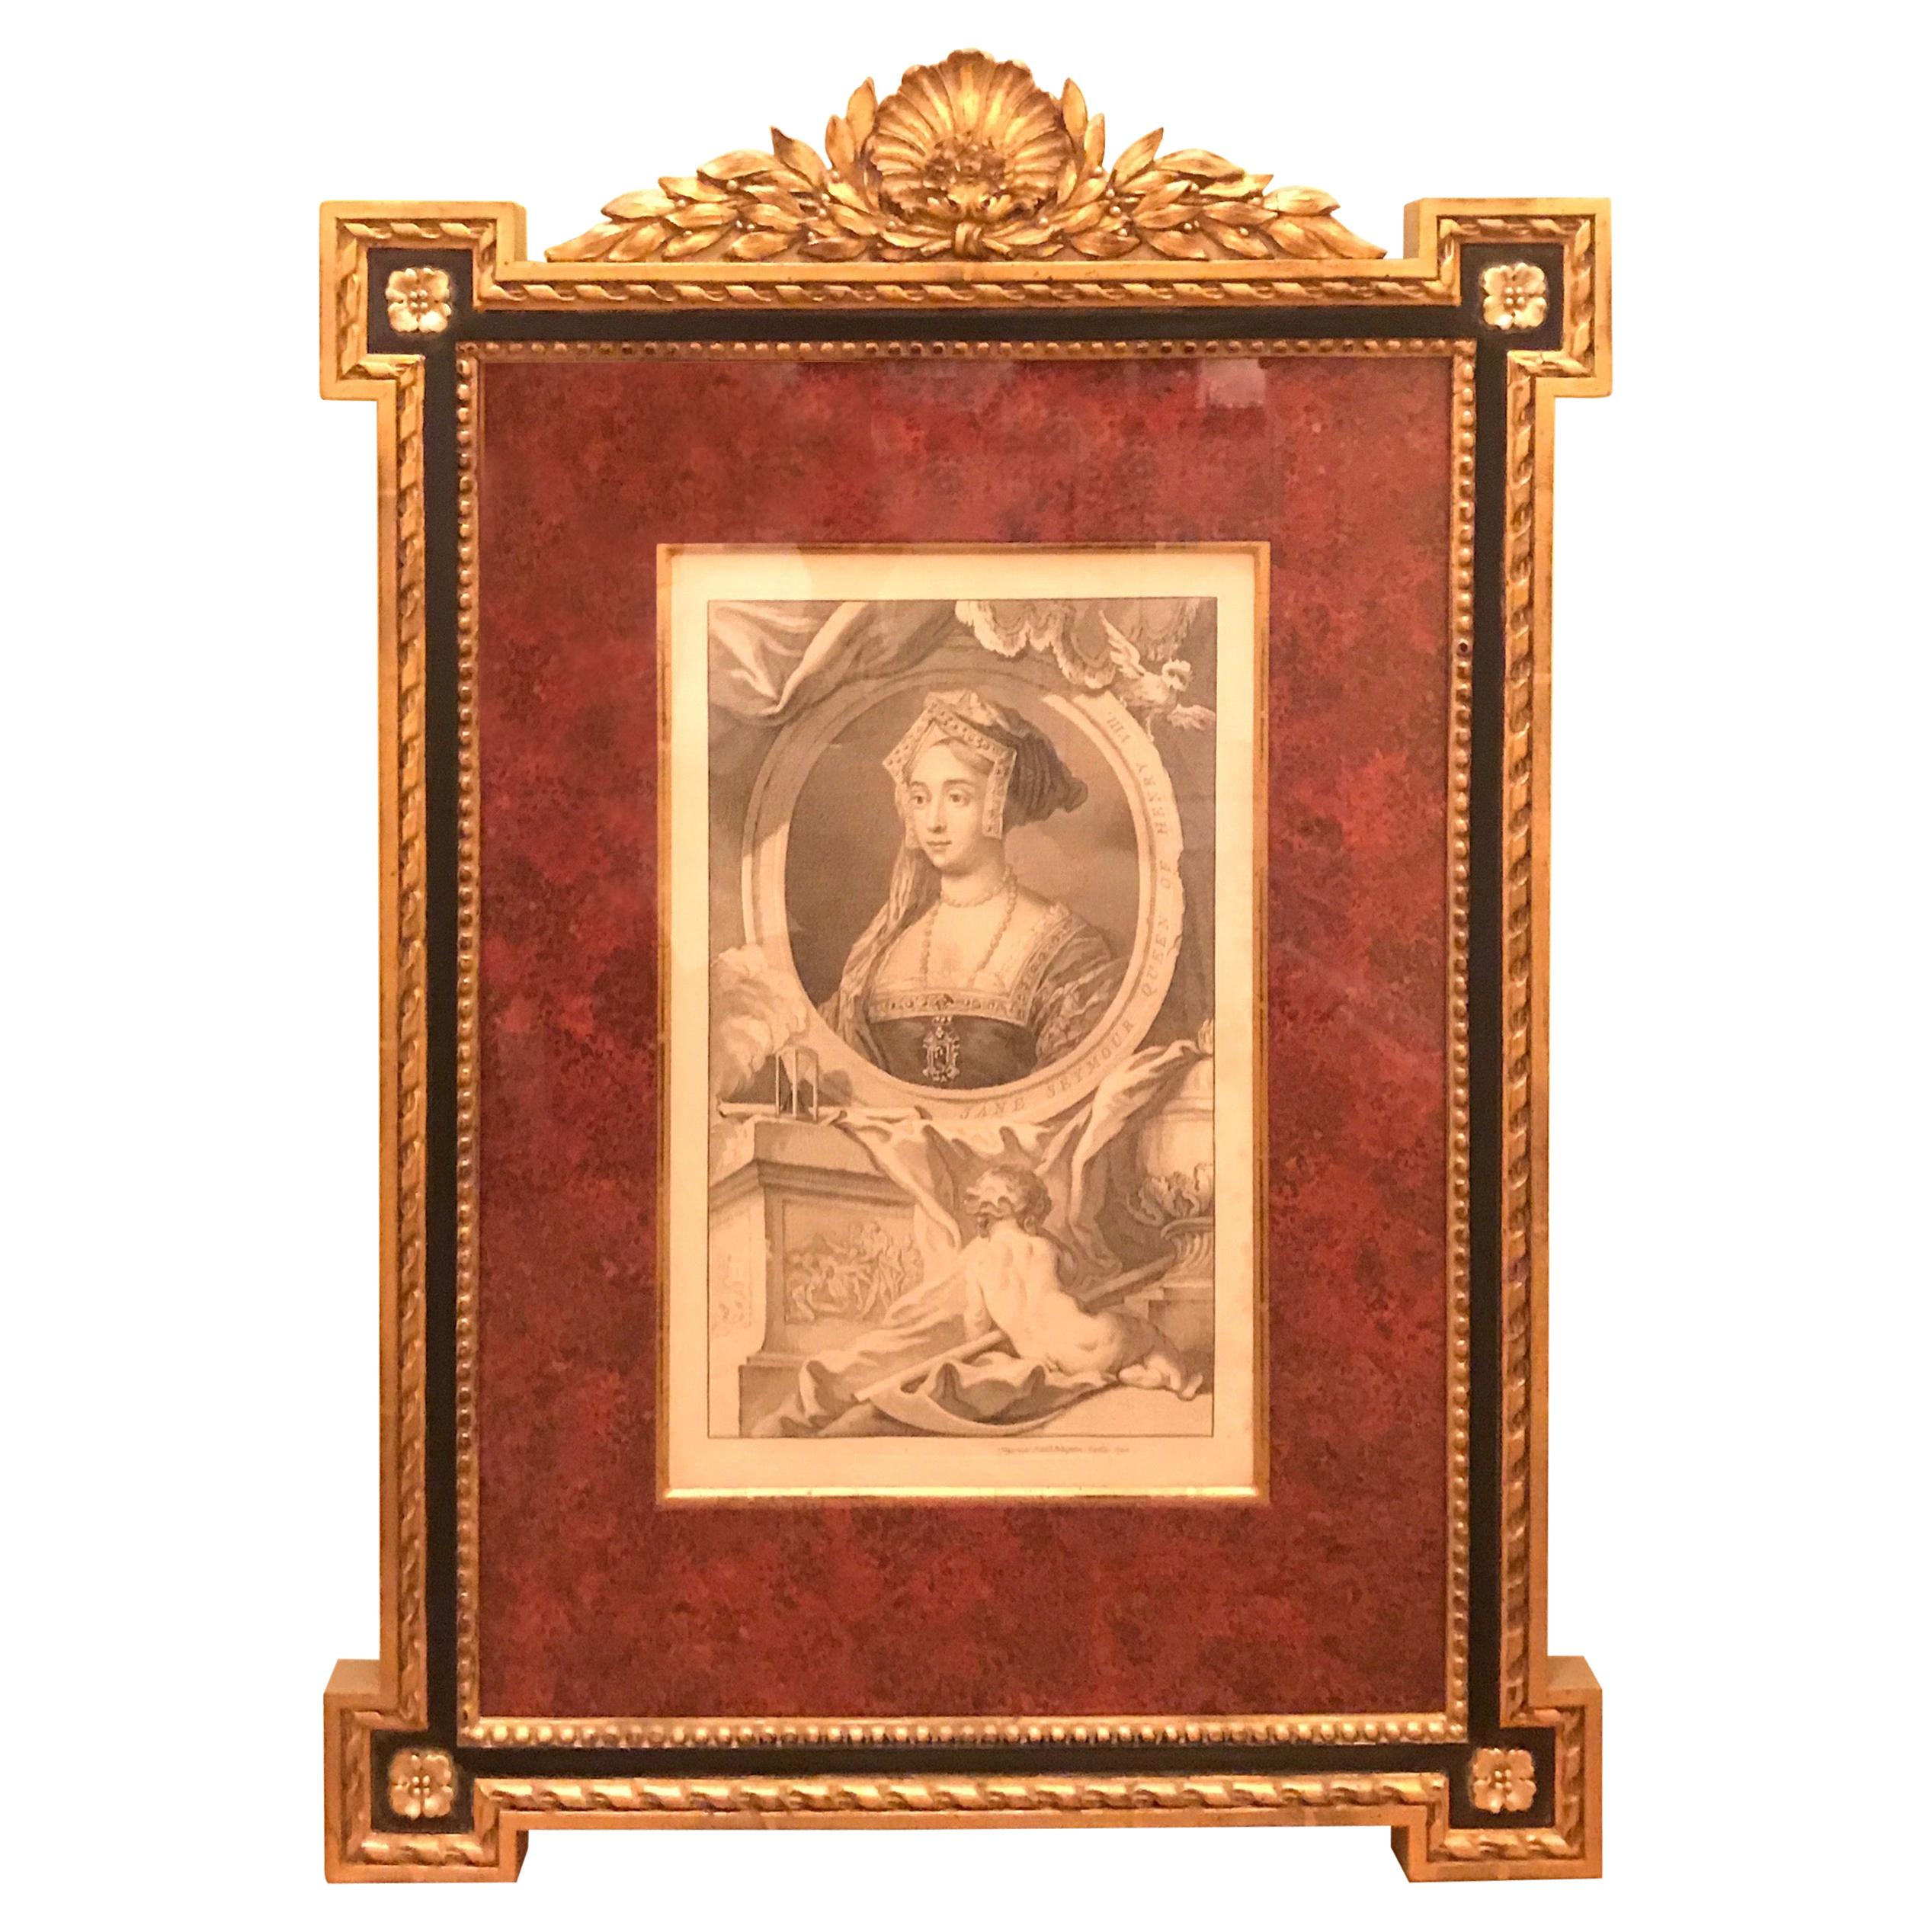 Gravure sur cuivre du 18ème siècle dans un cadre en bois doré publiée en 1746, Jane Seymour